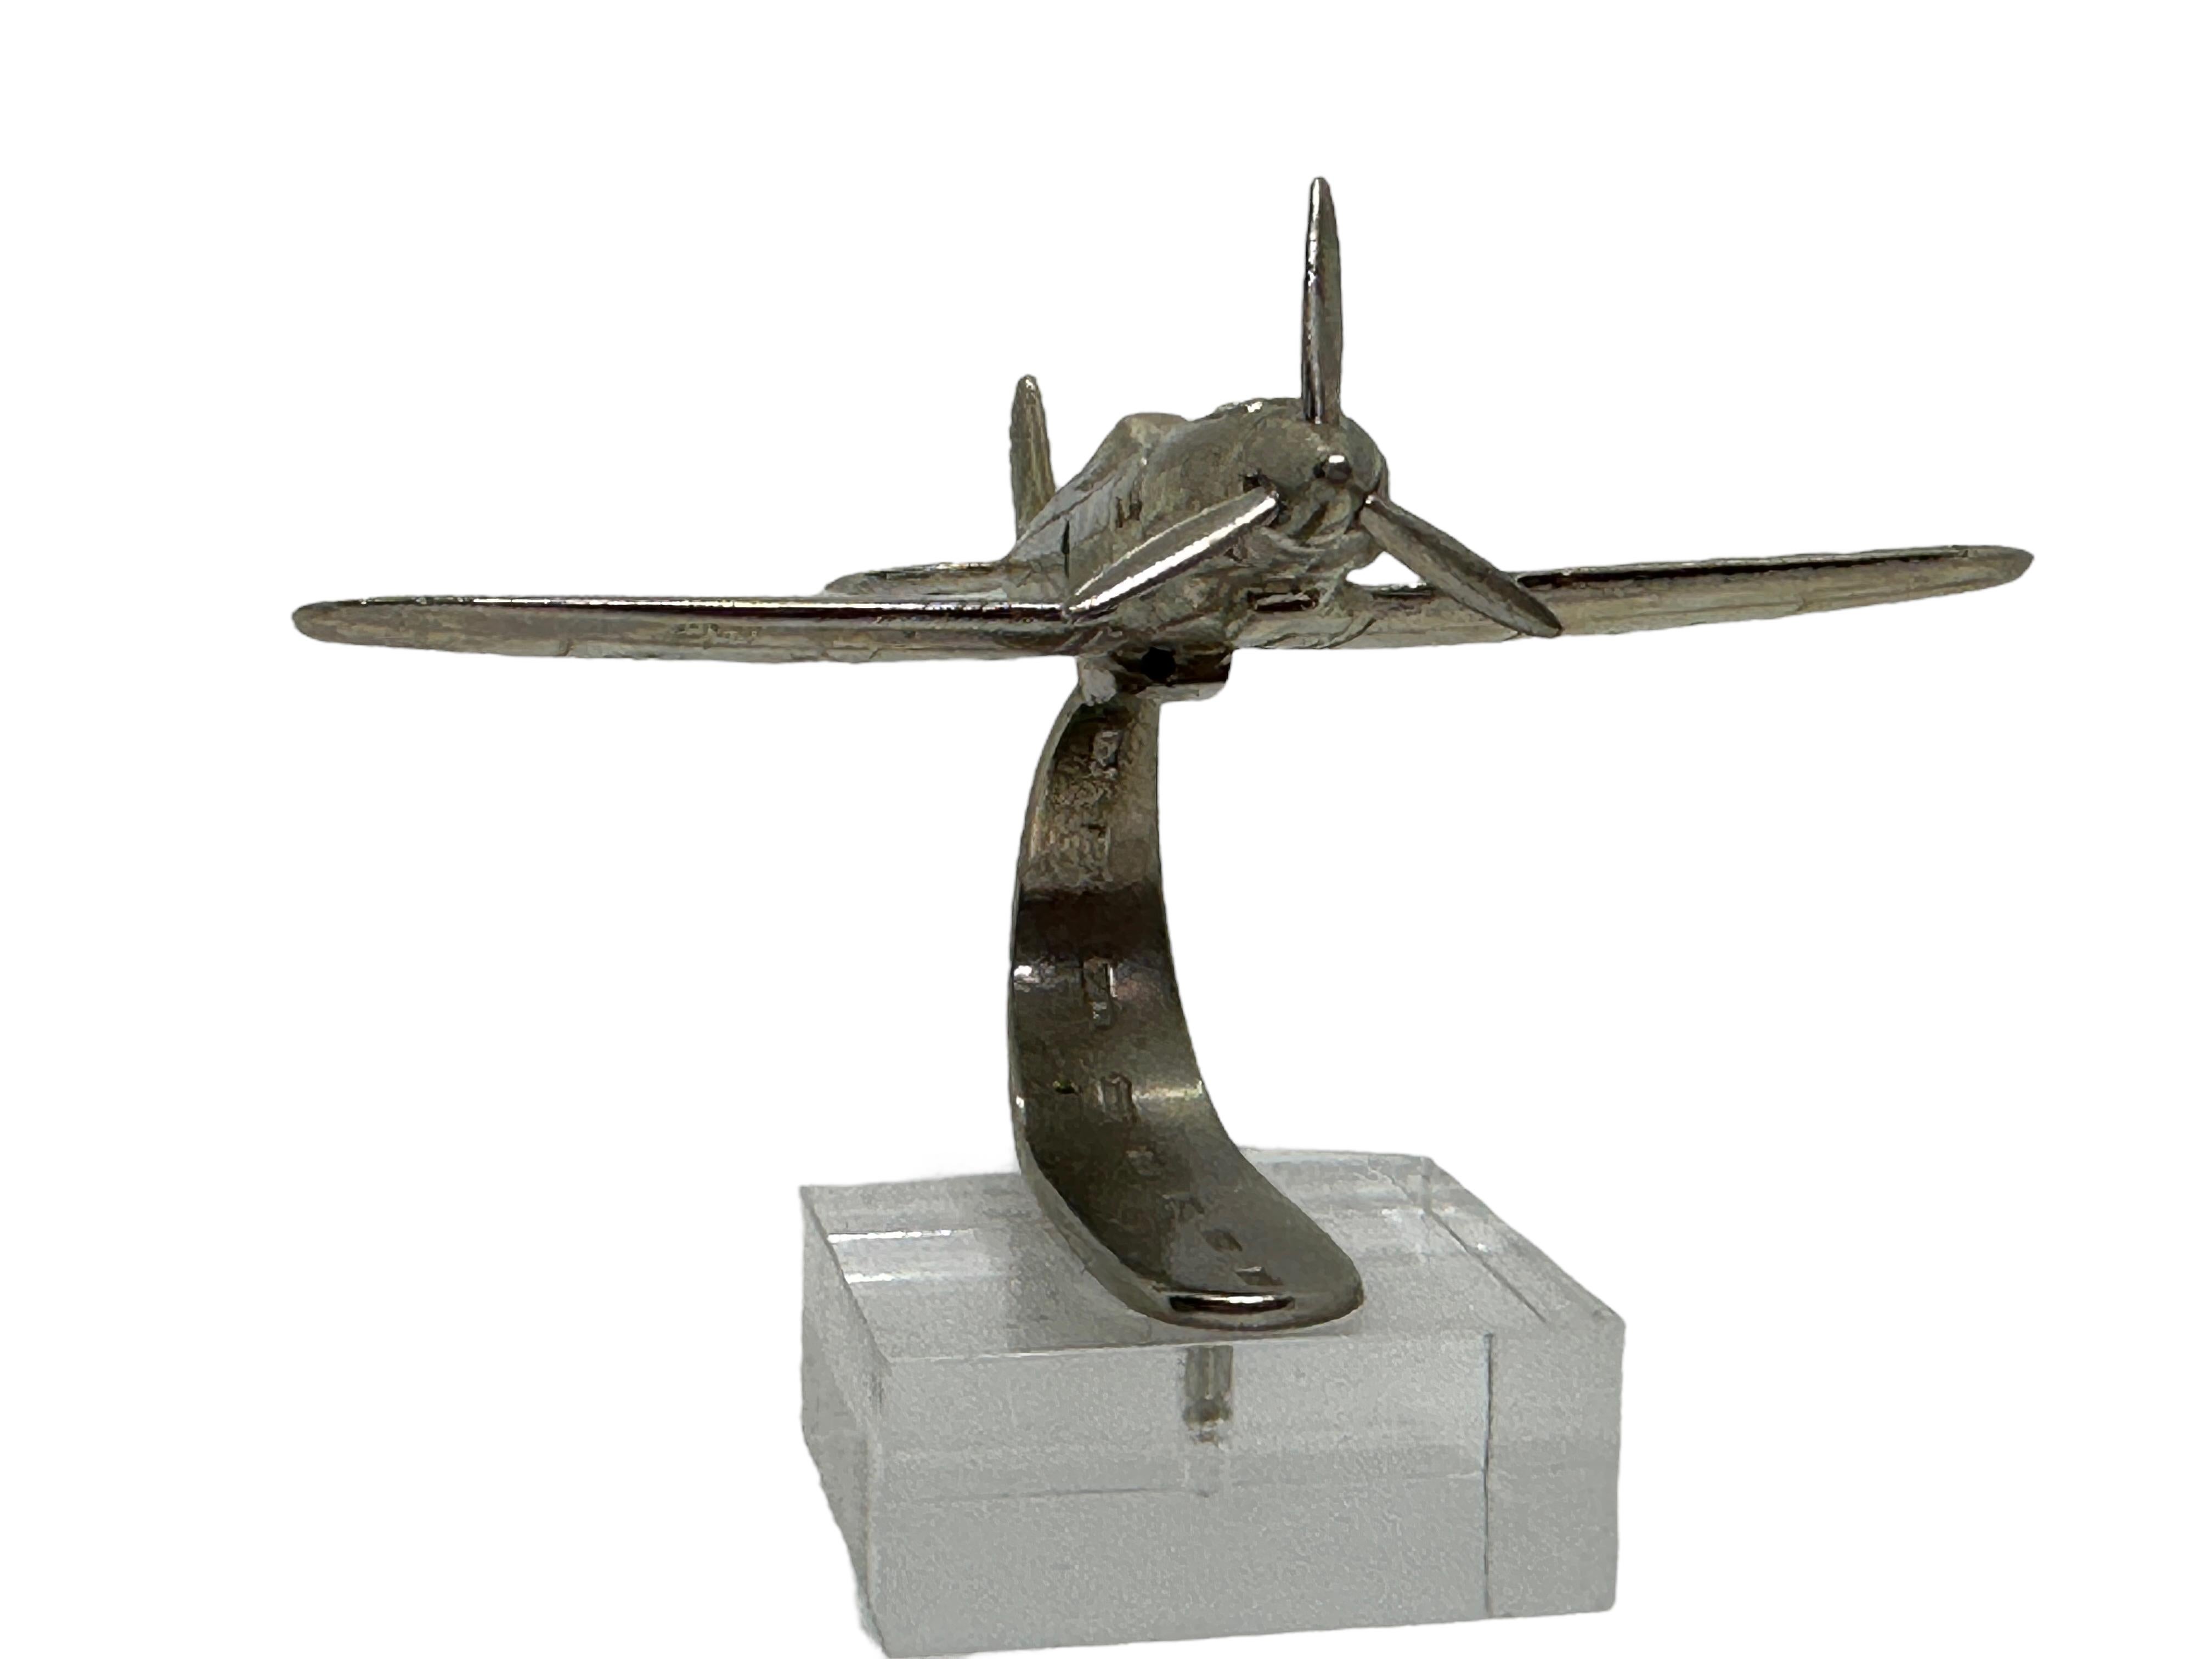 Modèle d'avion industriel réalisé dans les années 1980. Cet objet unique est fabriqué en métal et présente une finition chromée. Une belle sculpture industrielle pour les présenter sur une armoire, une crédence ou un bureau. Il s'agit également d'un